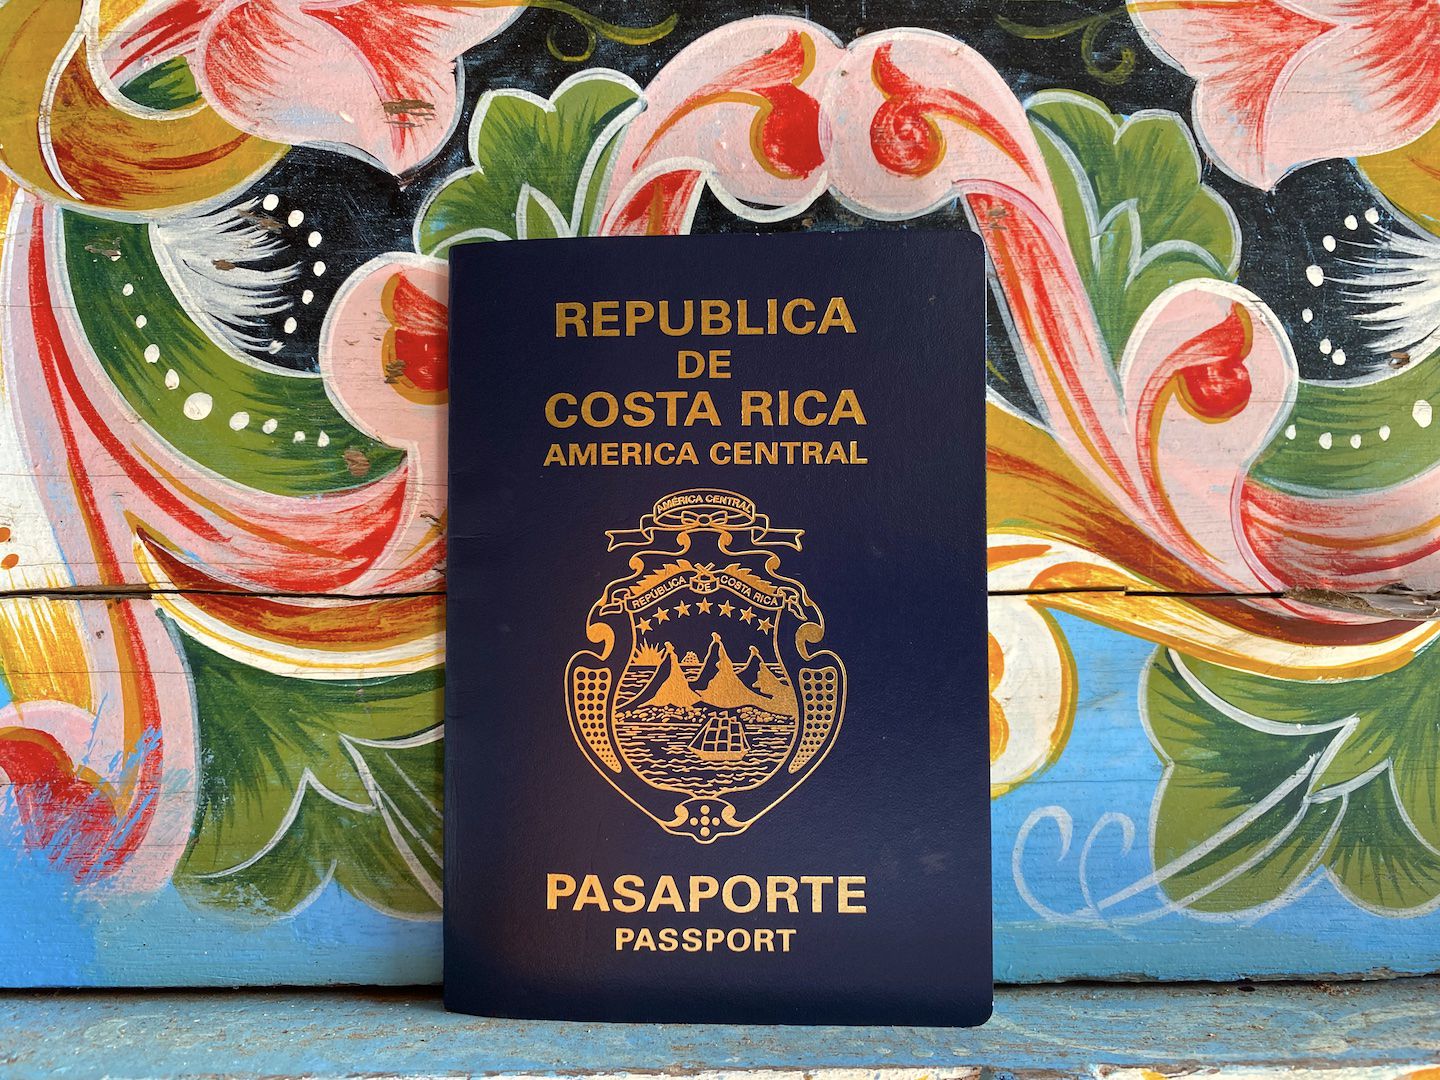 En caso de quedarse sin su pasaporte, tenga a mano contactos de las sedes diplomáticas de Costa Rica en los sitios que visite. Fotografía: Juan Fernando Lara S.